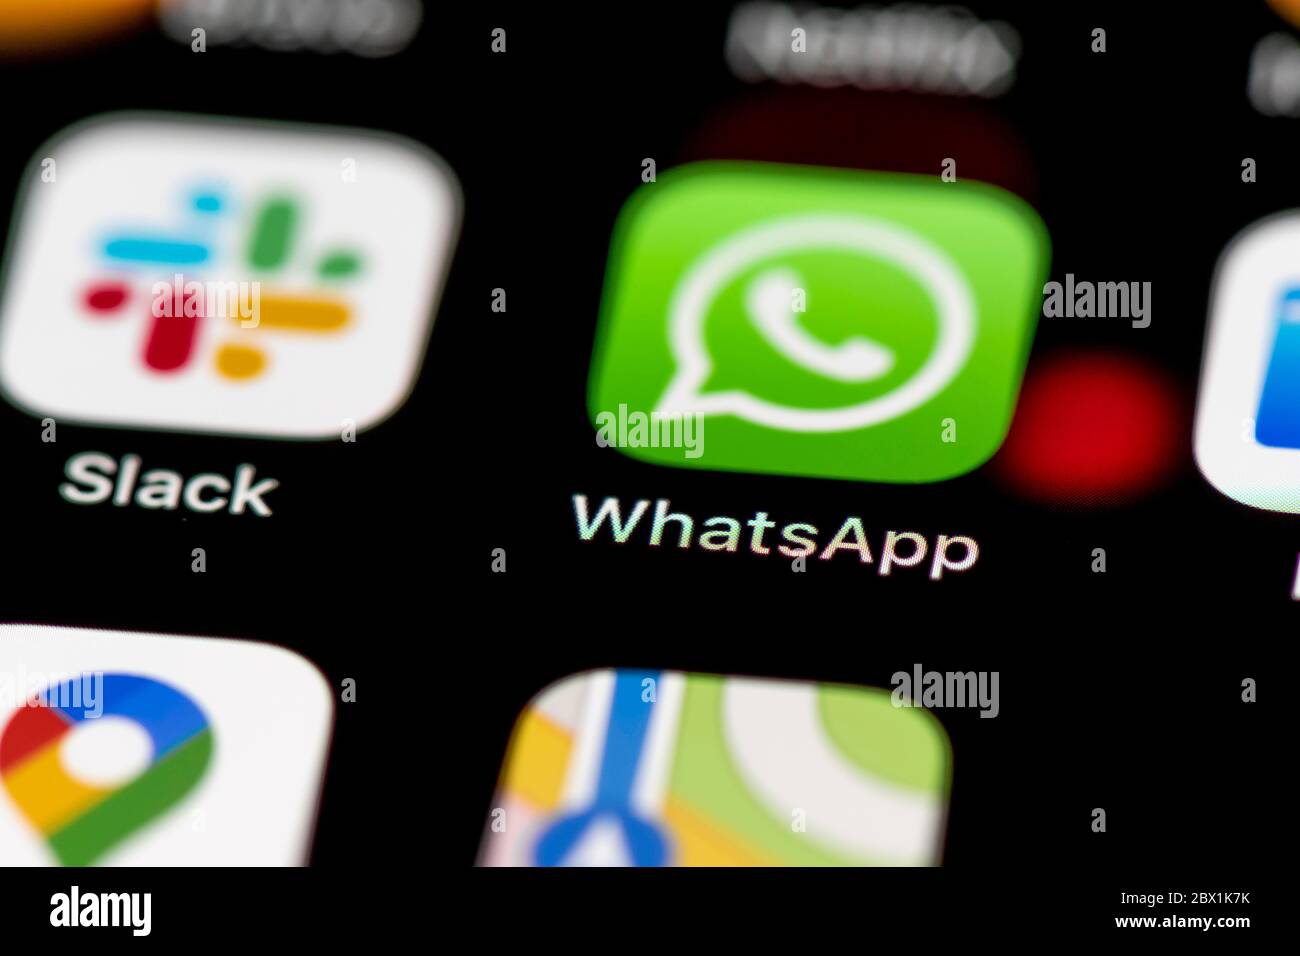 WhatsApp, icônes d'application sur un écran de téléphone mobile, iPhone, smartphone, gros plan Banque D'Images